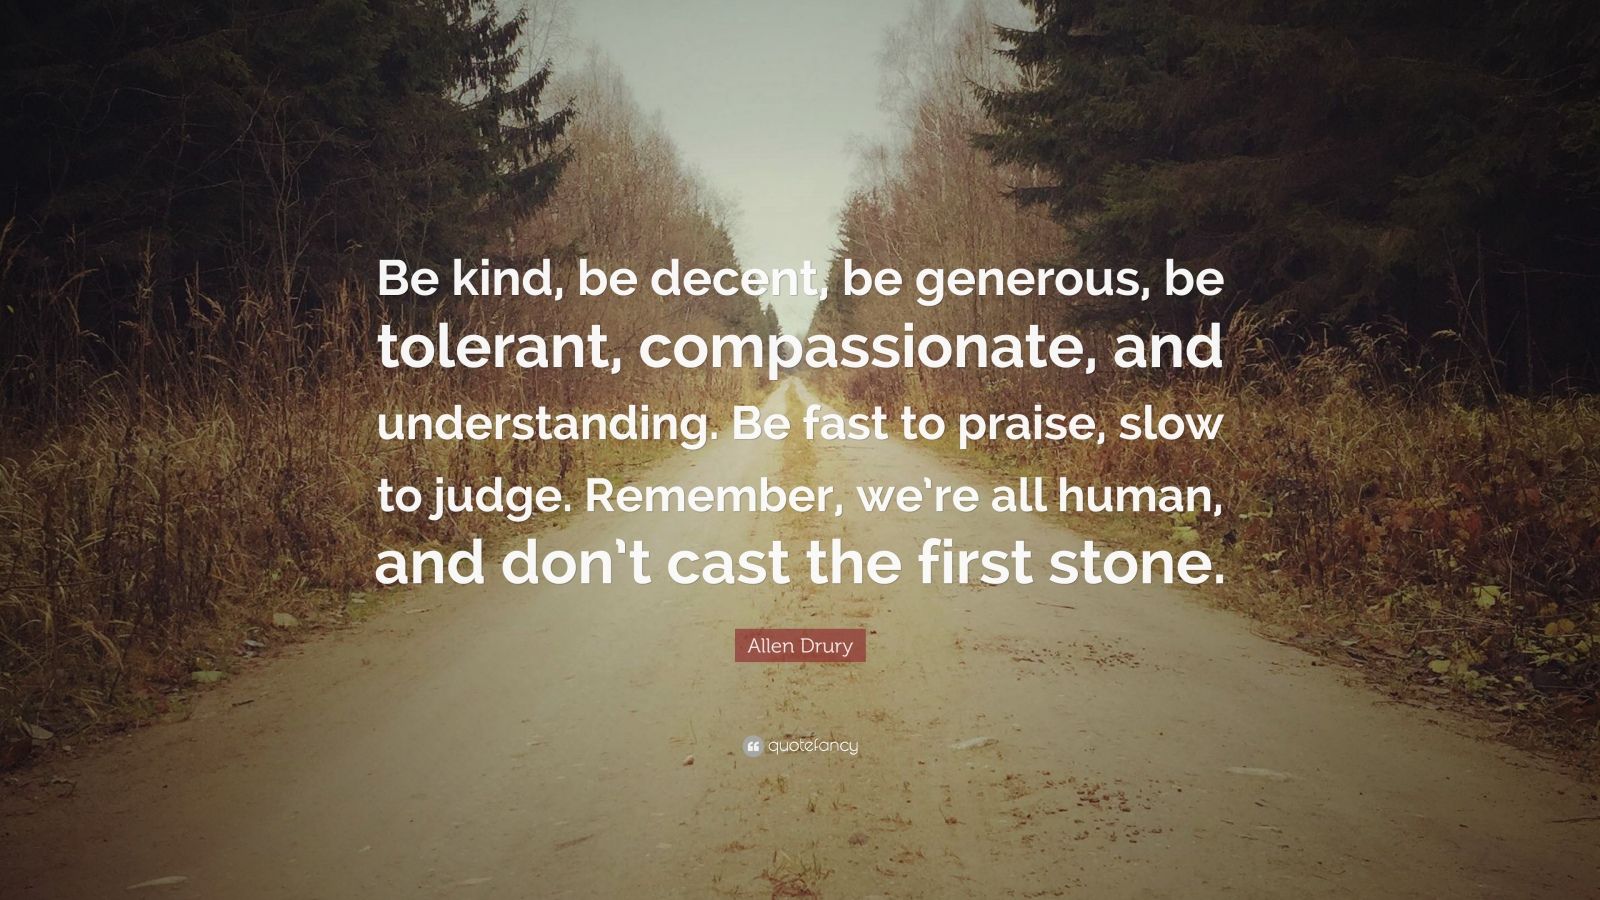 Allen Drury Quote: “Be kind, be decent, be generous, be tolerant